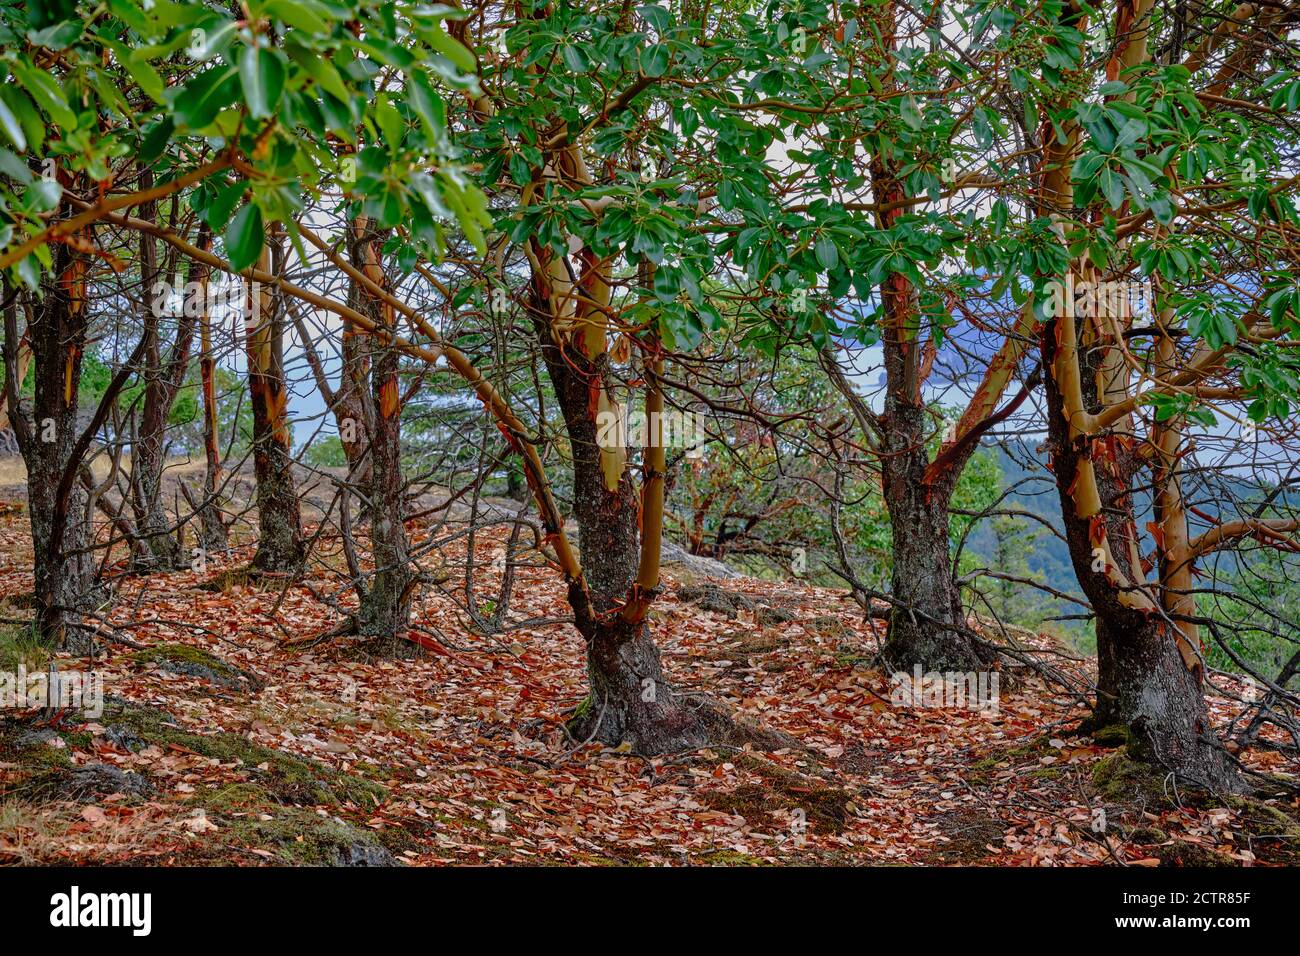 Arbutus aka Strawberry Trees avec écorce de peeling dans une zone boisée sur Notch Hill près de Nanoose Bay, C.-B. Arbutus ne se trouve que sur la côte sud-ouest de la Colombie-Britannique Banque D'Images